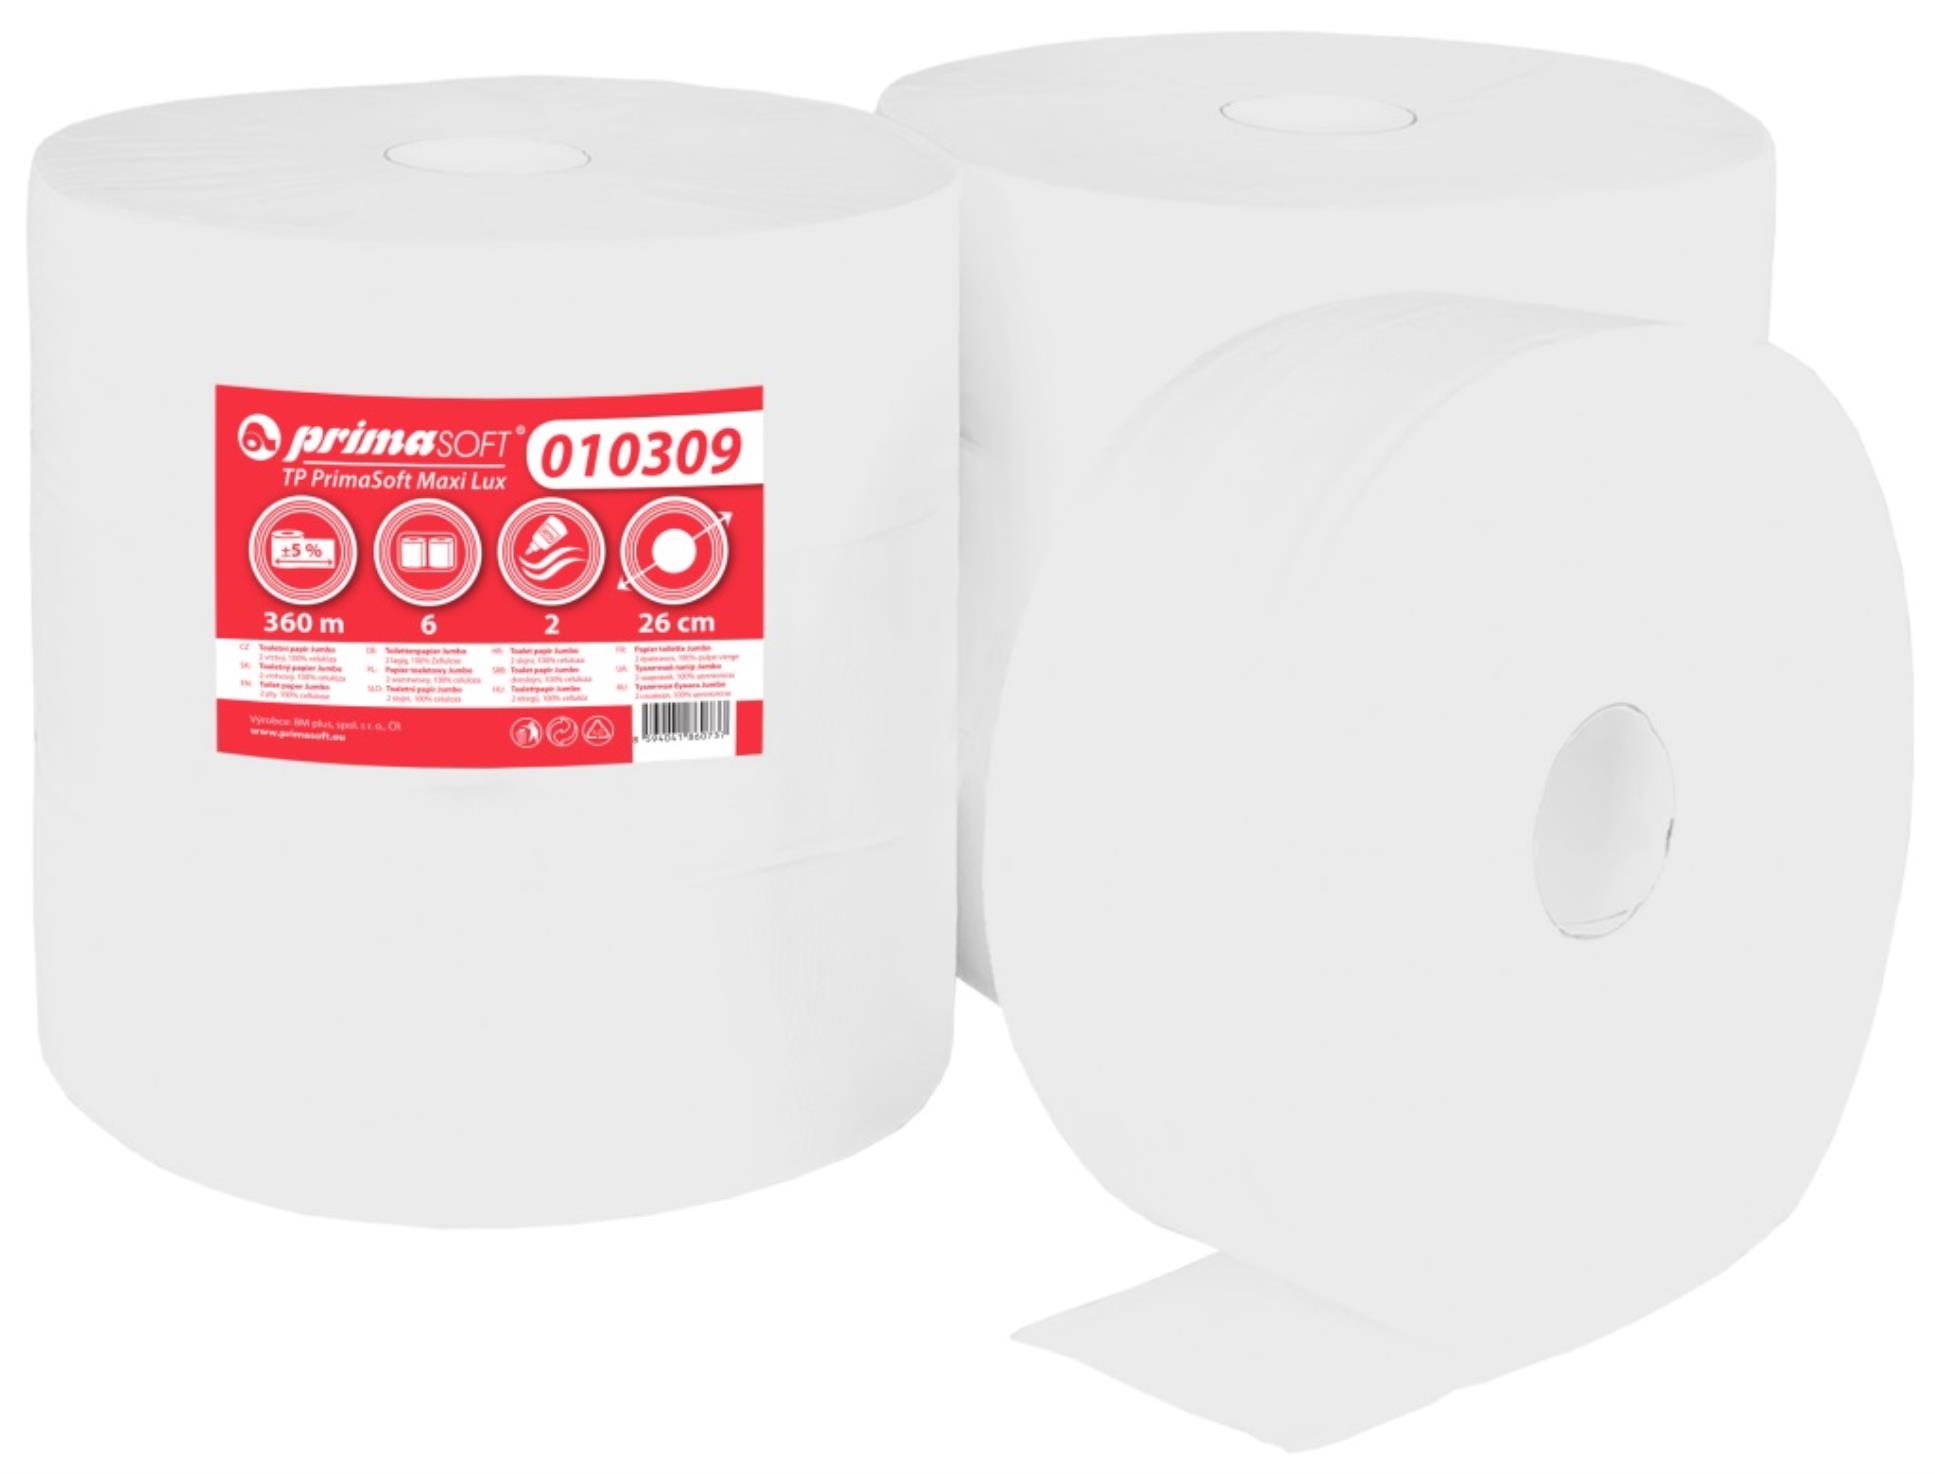 Primasoft Toaletní papír Prima Soft Jumbo - 2 vrstvý, 6 rolí